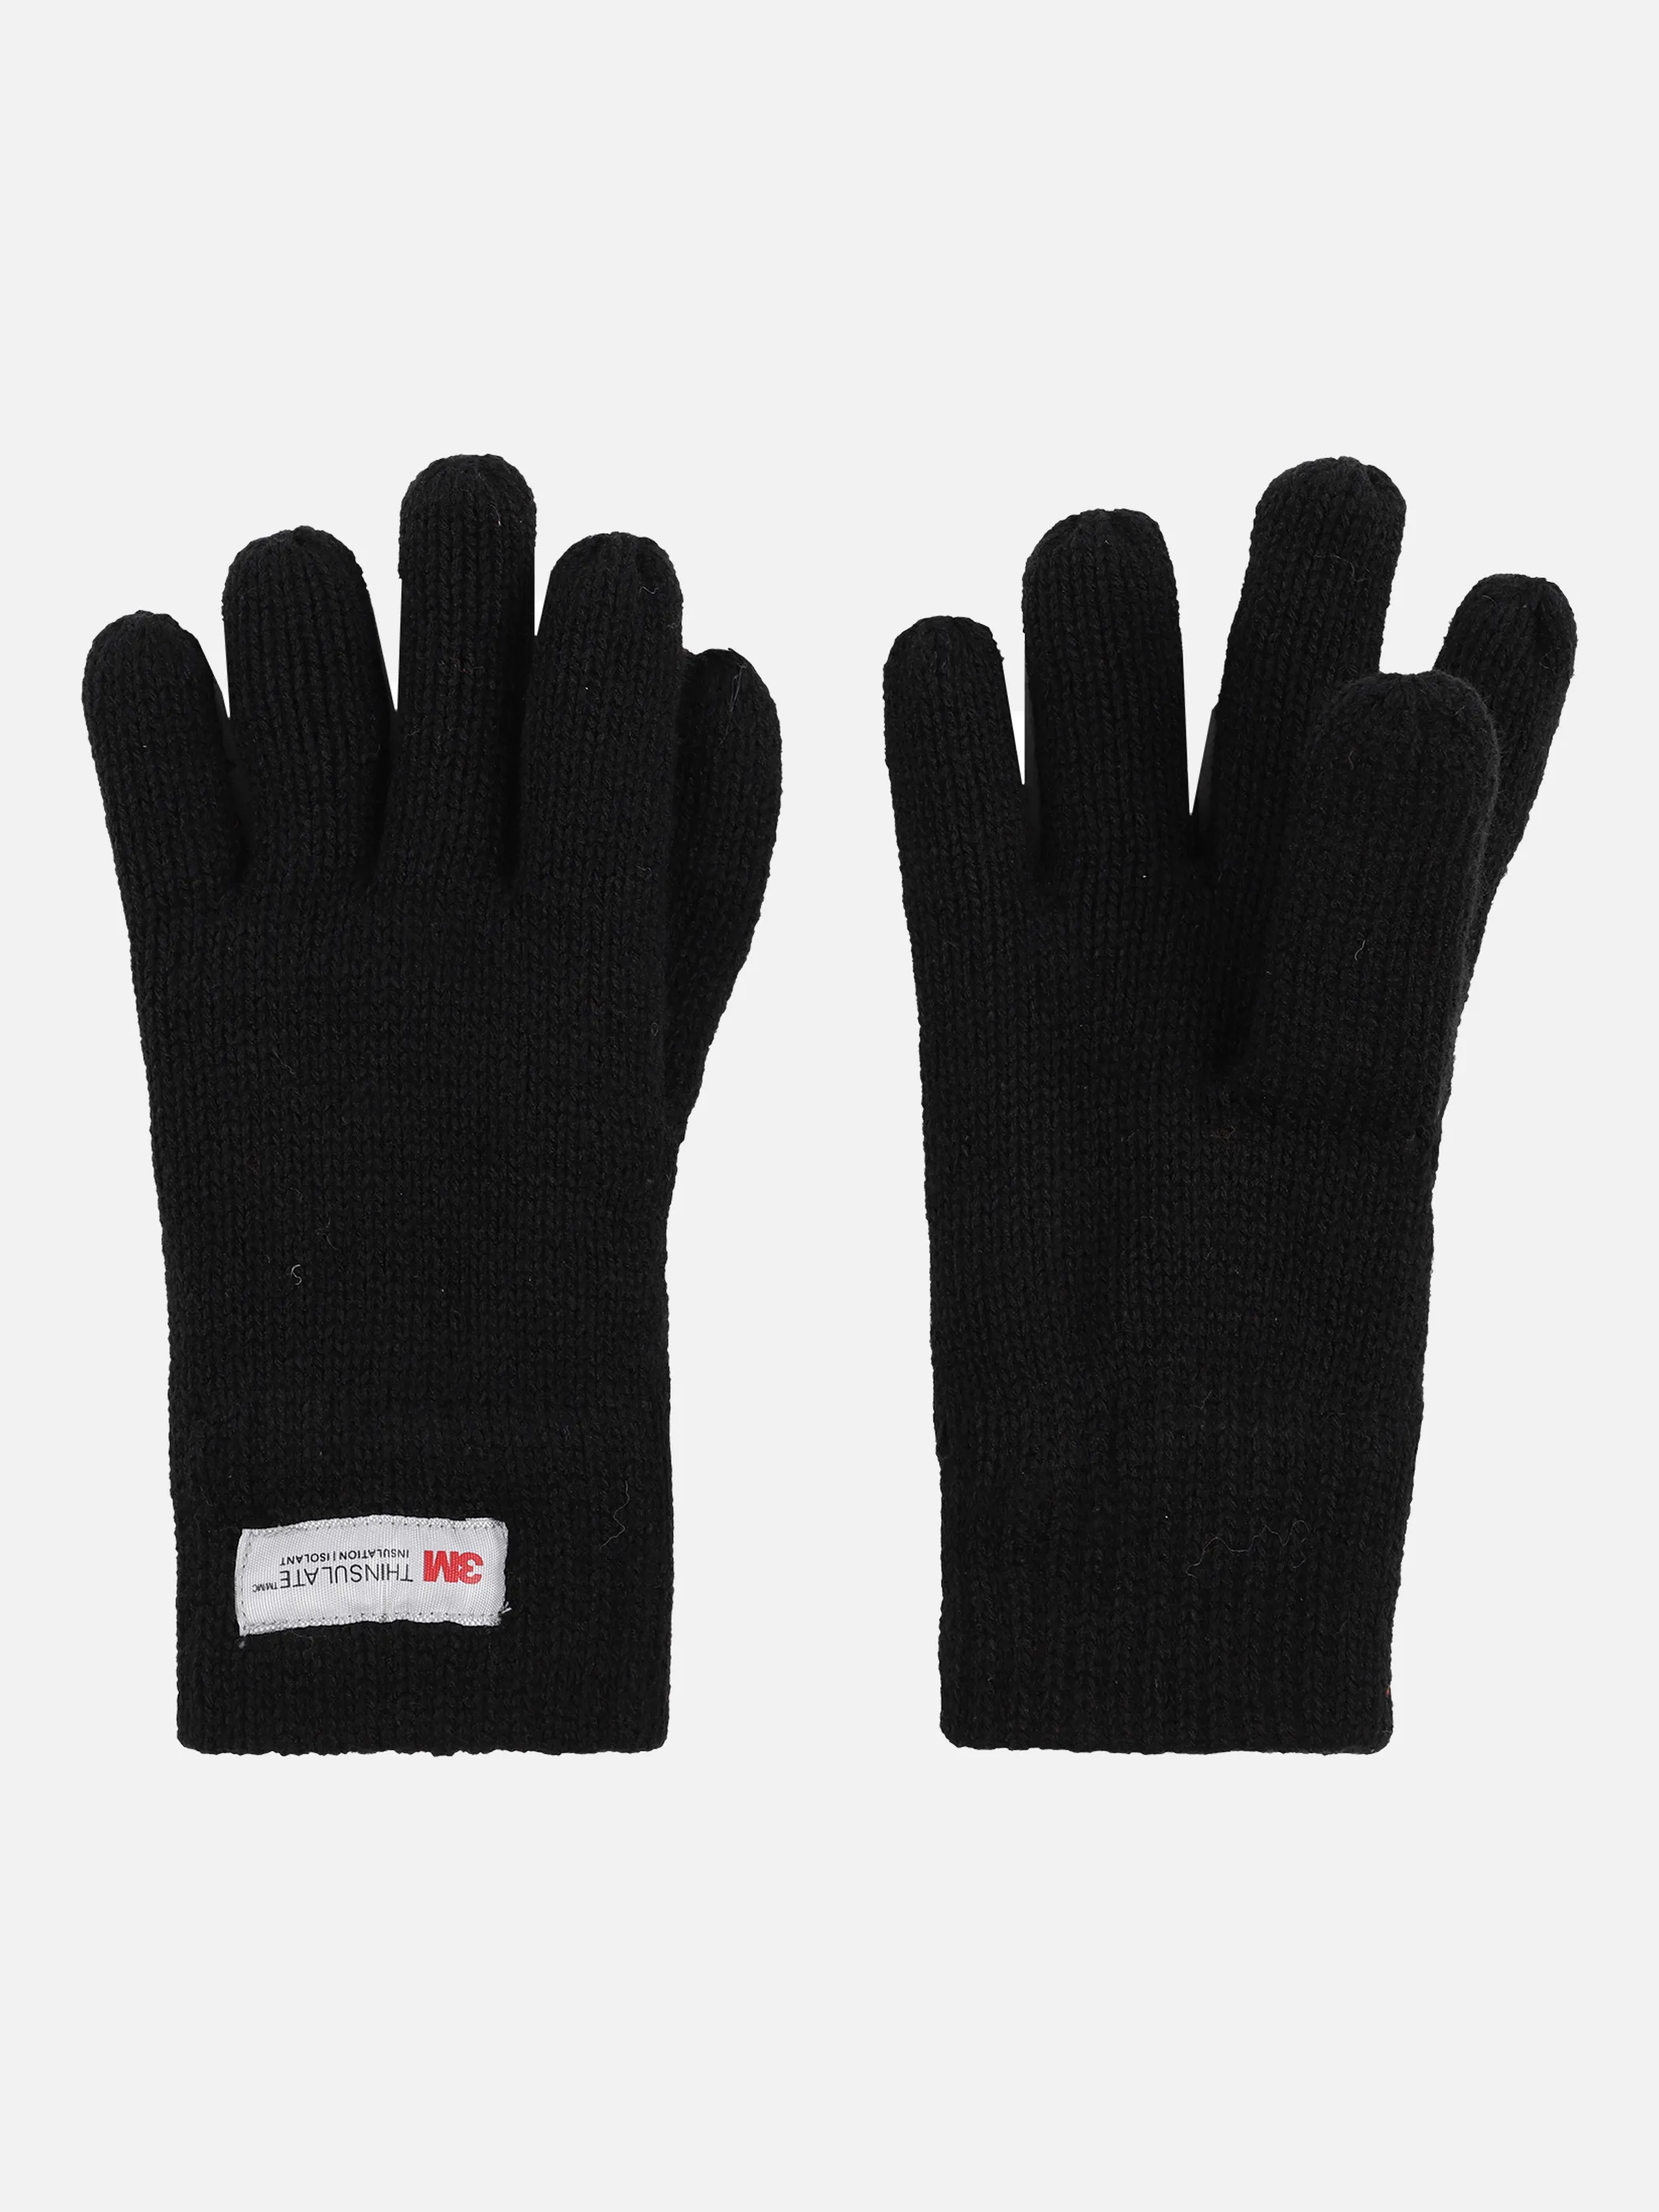 Stop + Go TU Handschuhe in schwarz mit Schwarz 870863 SCHWARZ 2